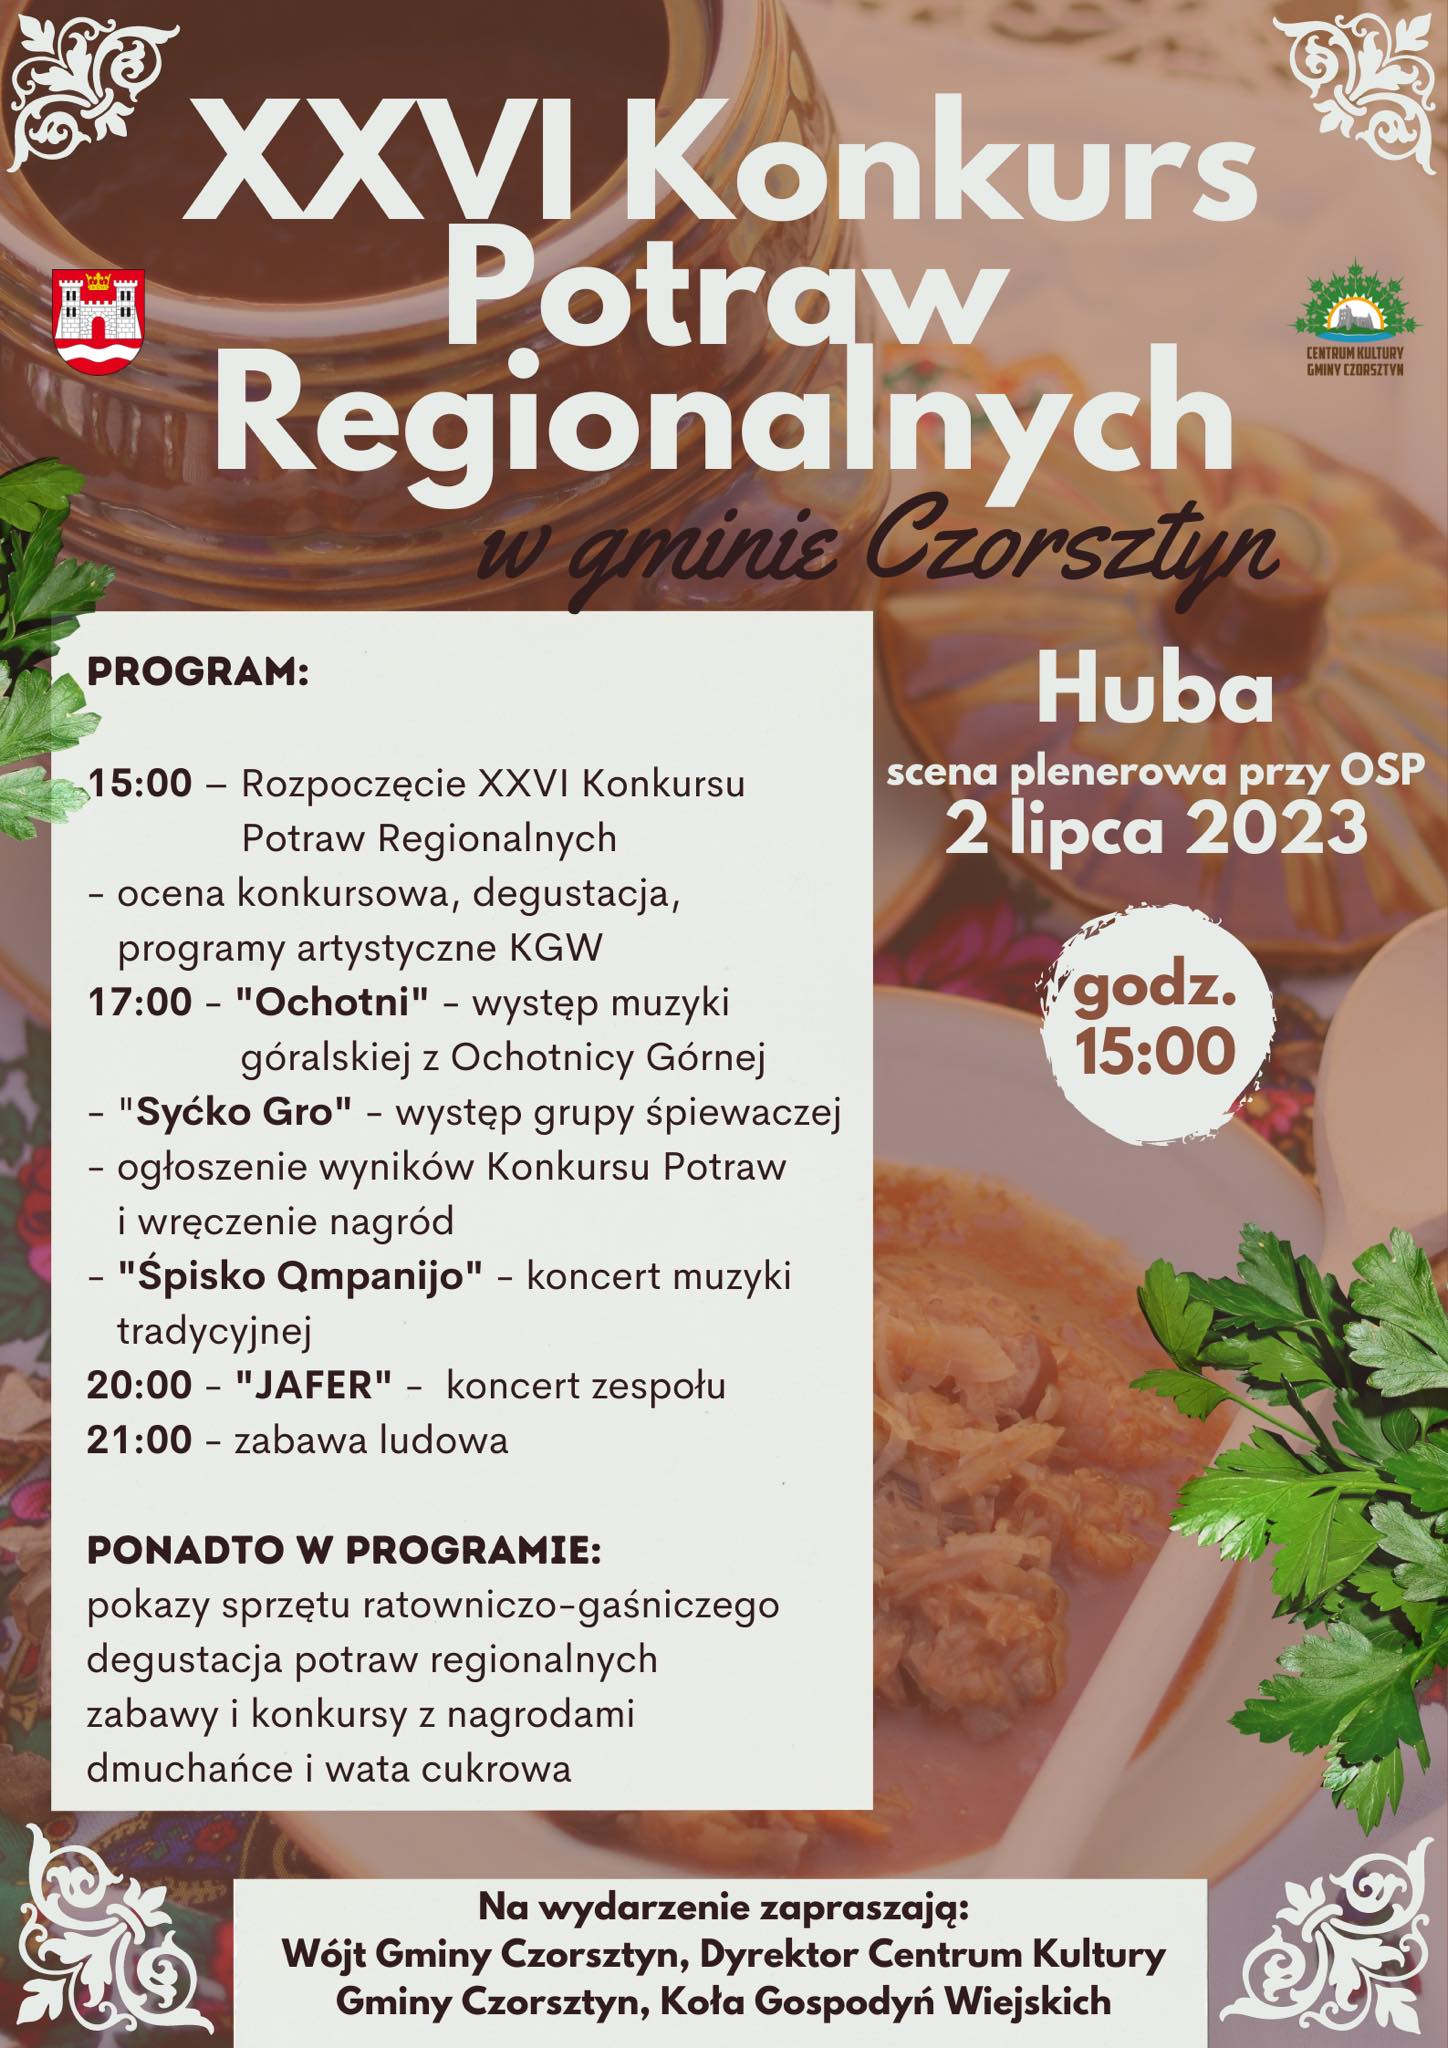 XXVI Konkurs Potraw Regionalnych zbliża się wielkimi krokami!